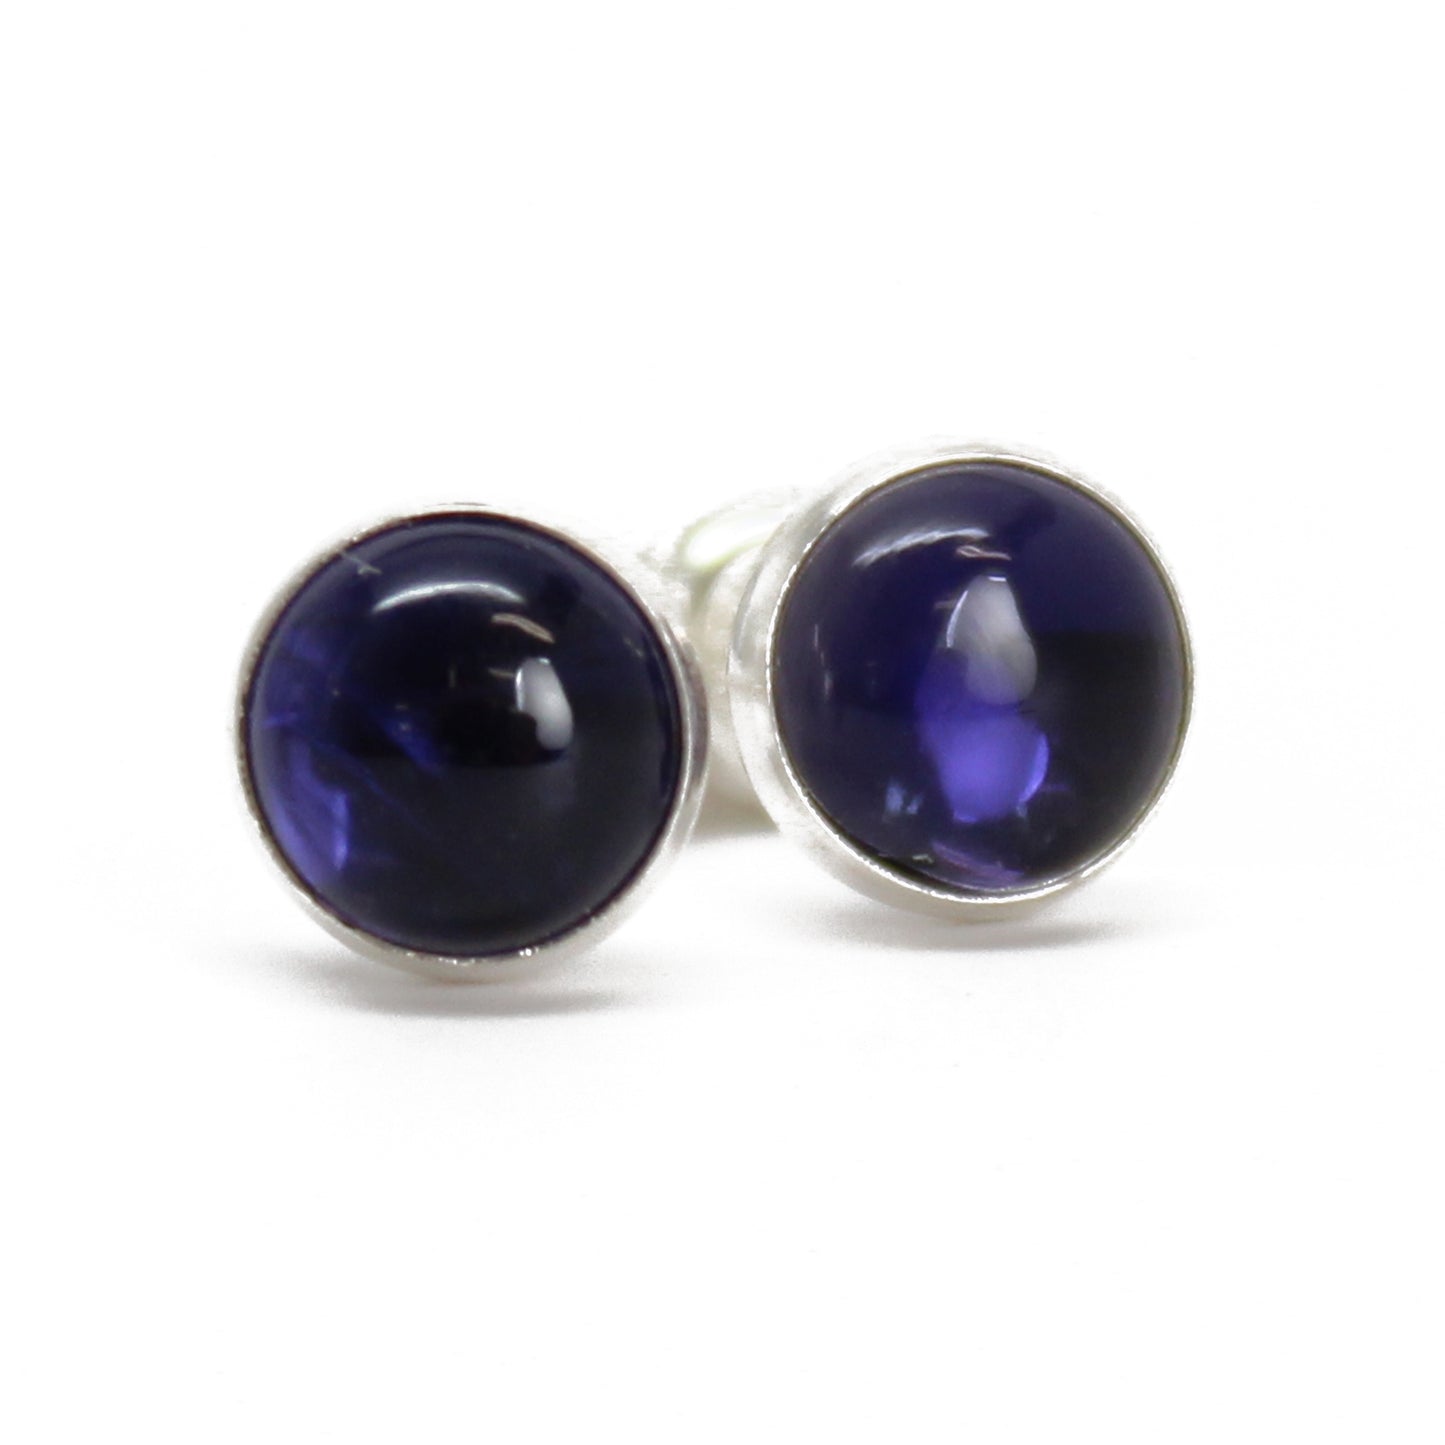 Iolite Stud Earrings, 6mm Blue Gemstone Studs in Sterling Silver